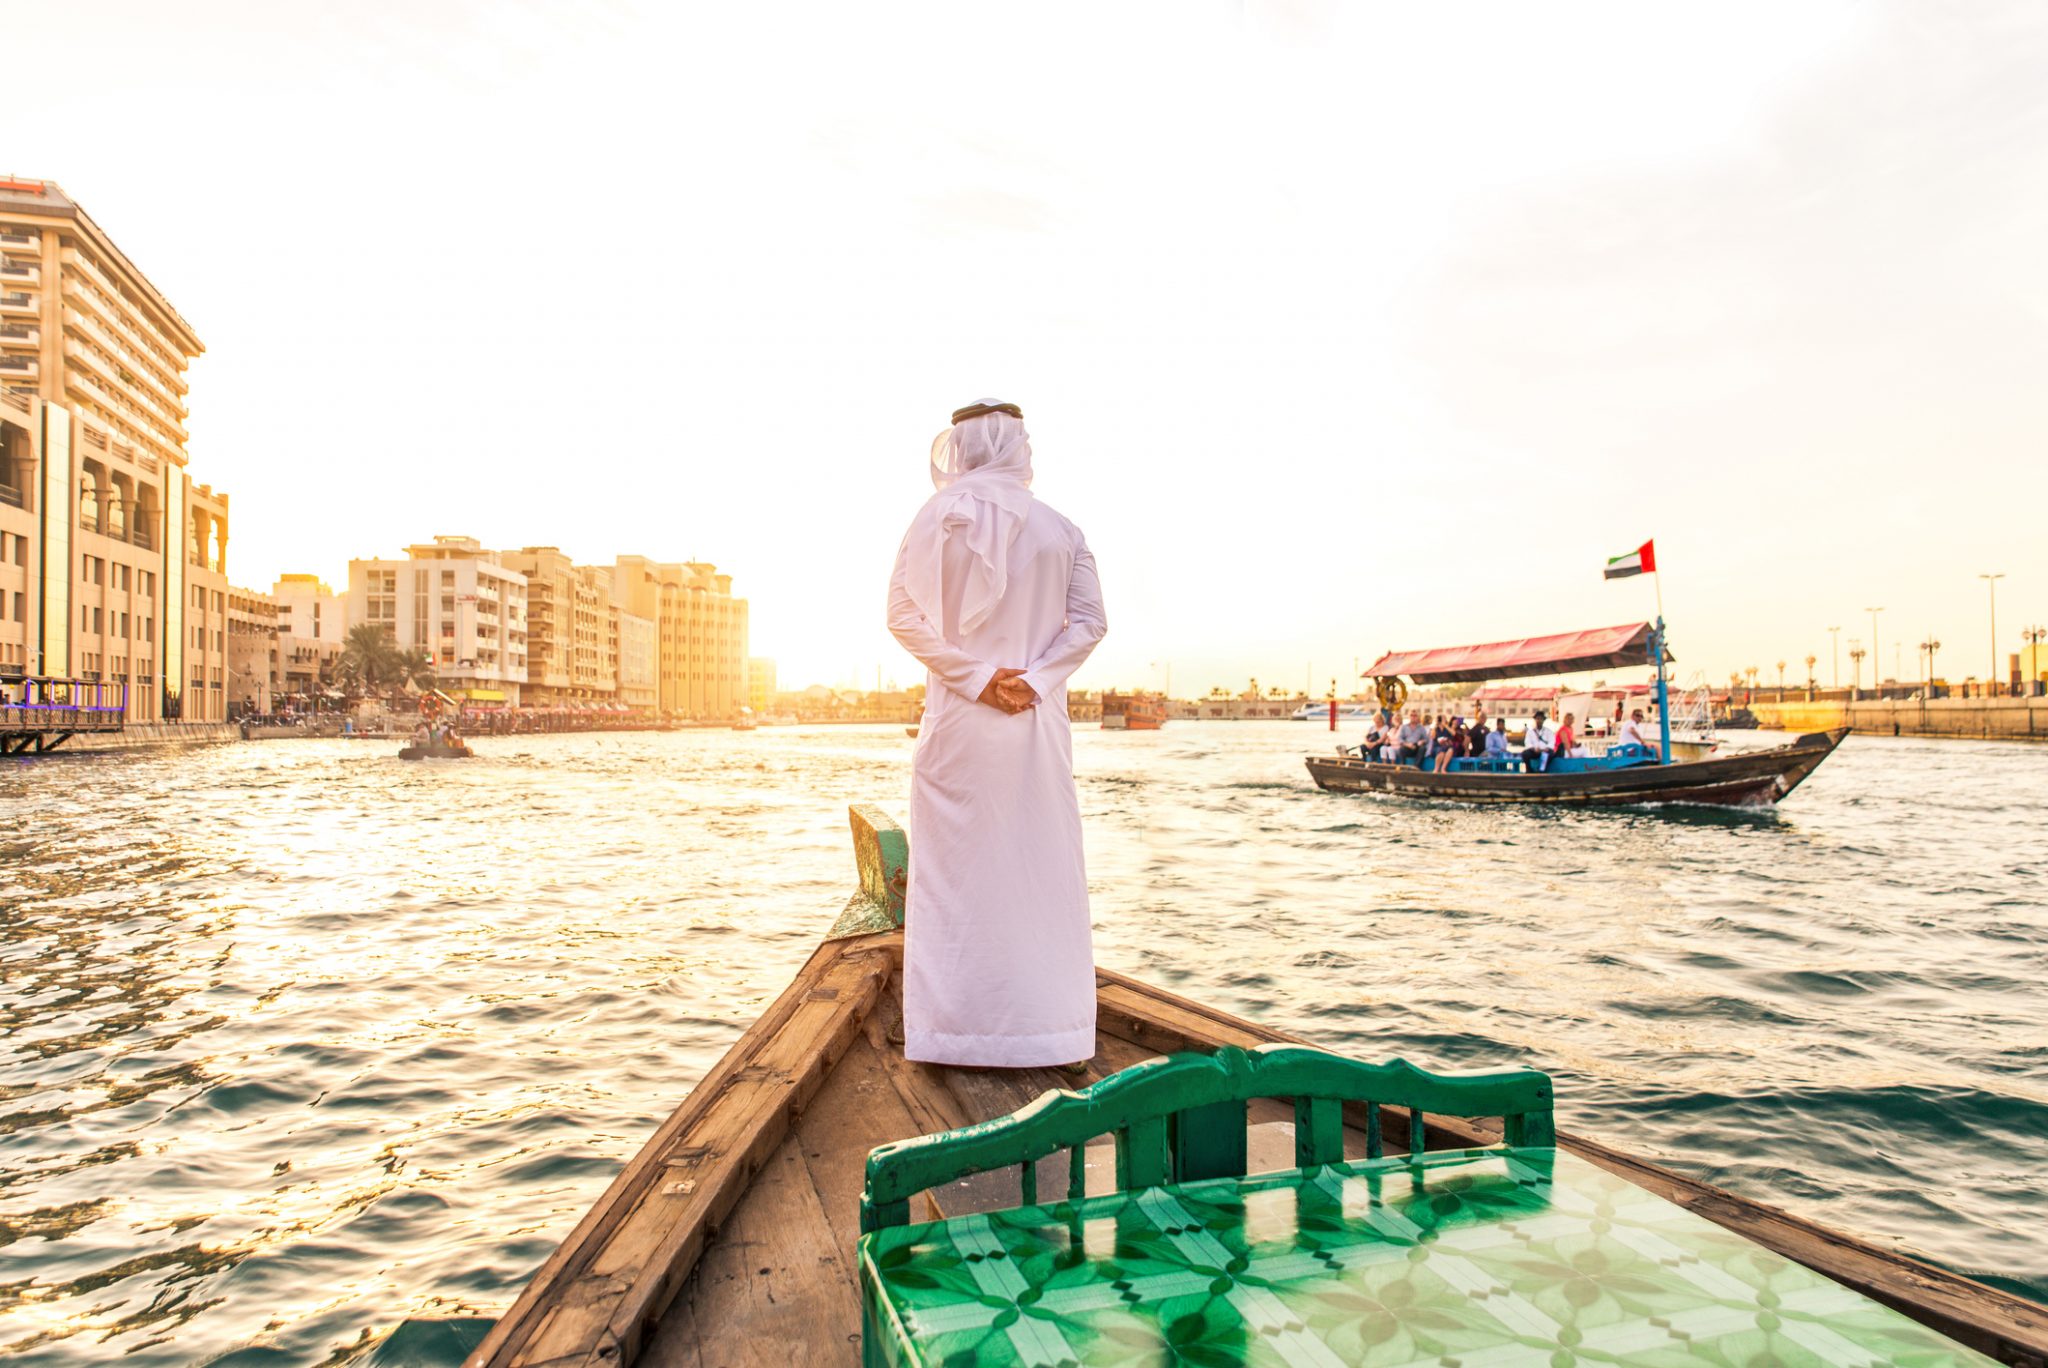 Arabian man on abra boat on Creek's canal